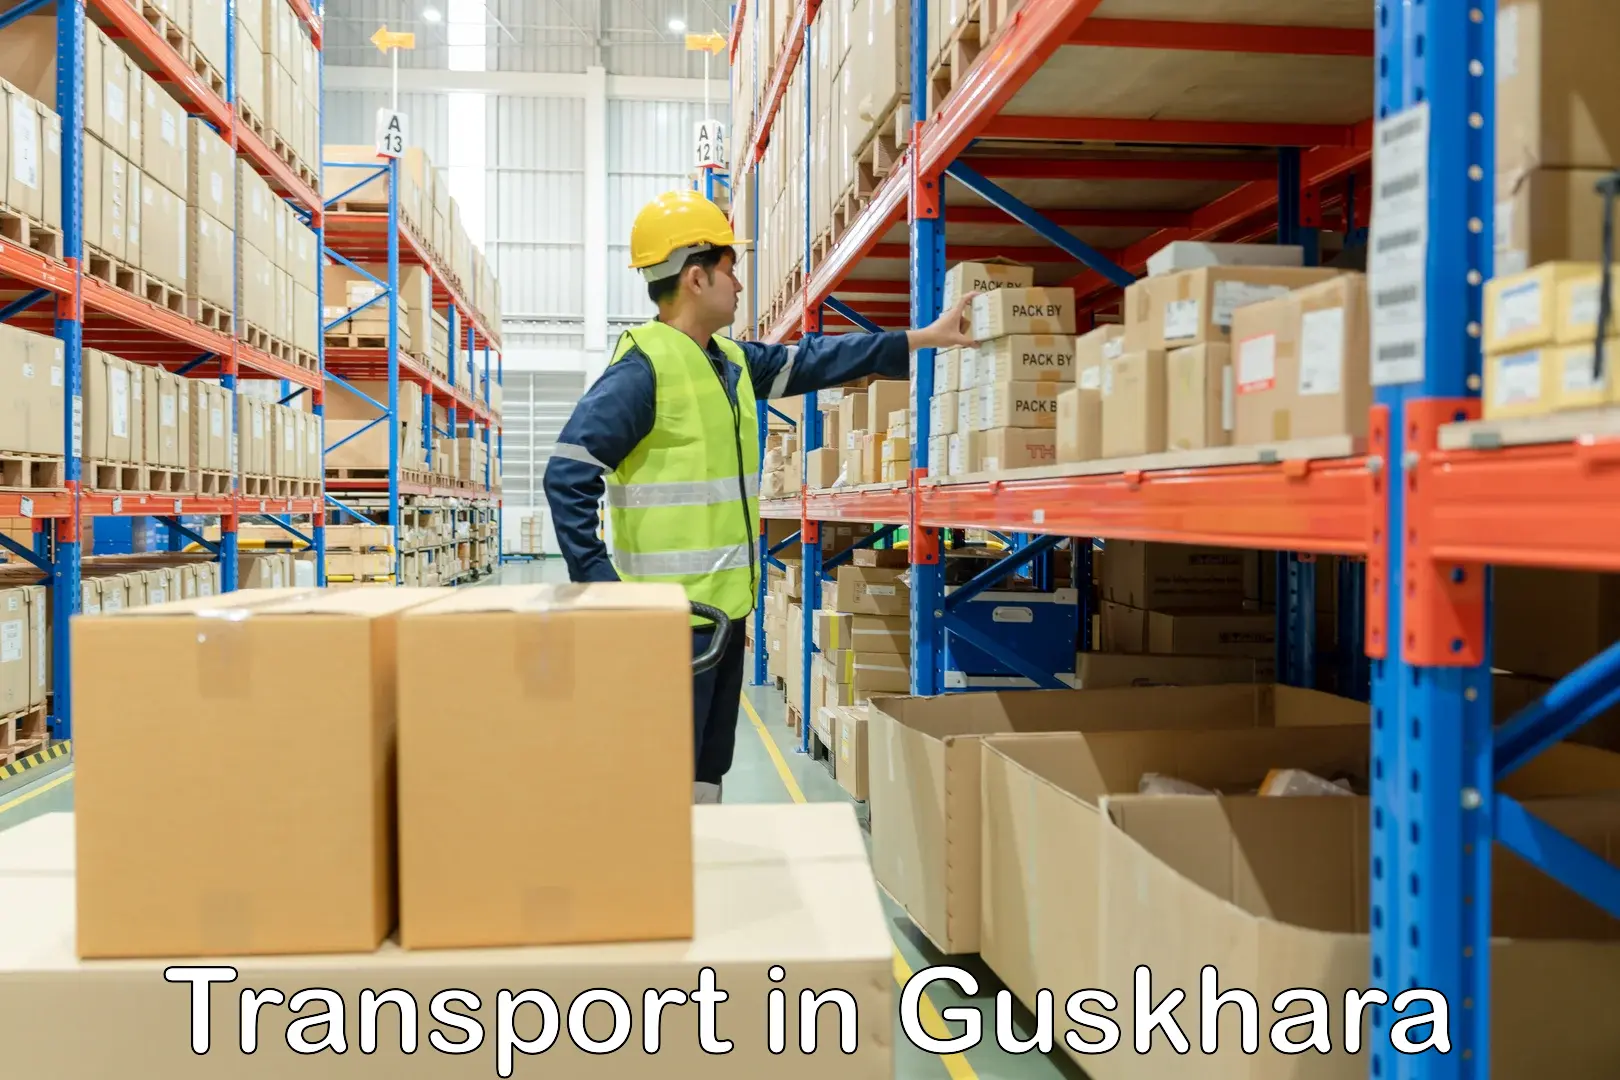 Transport in sharing in Guskhara